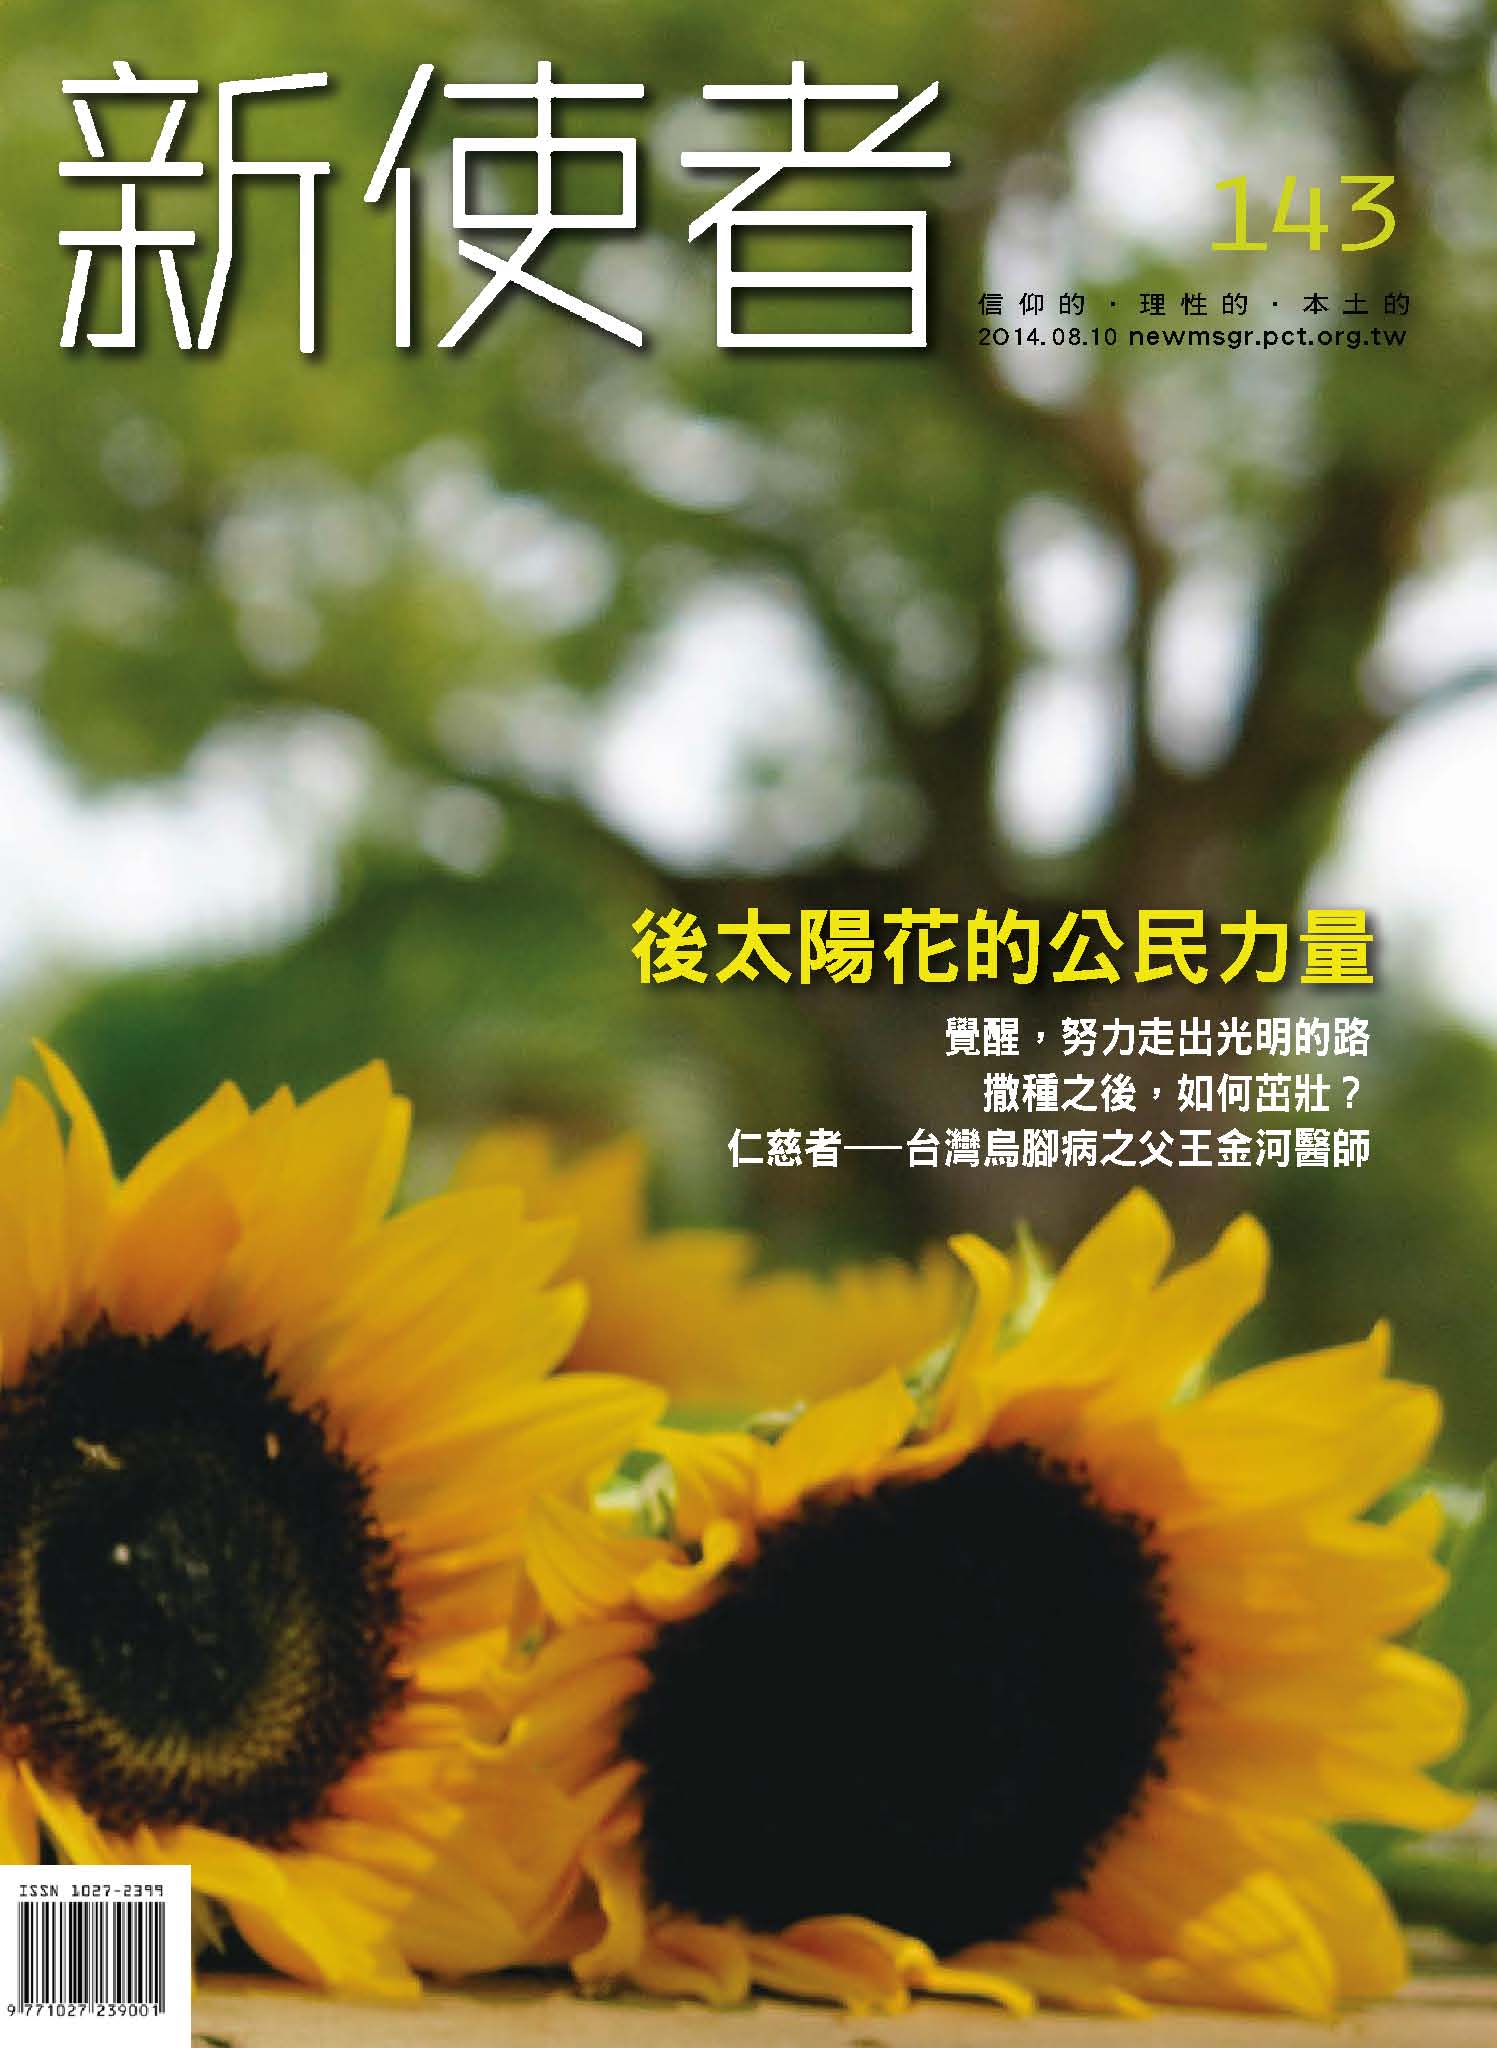 新使者雜誌 The New Messenger  143期  2014年  8月 後太陽花的公民力量